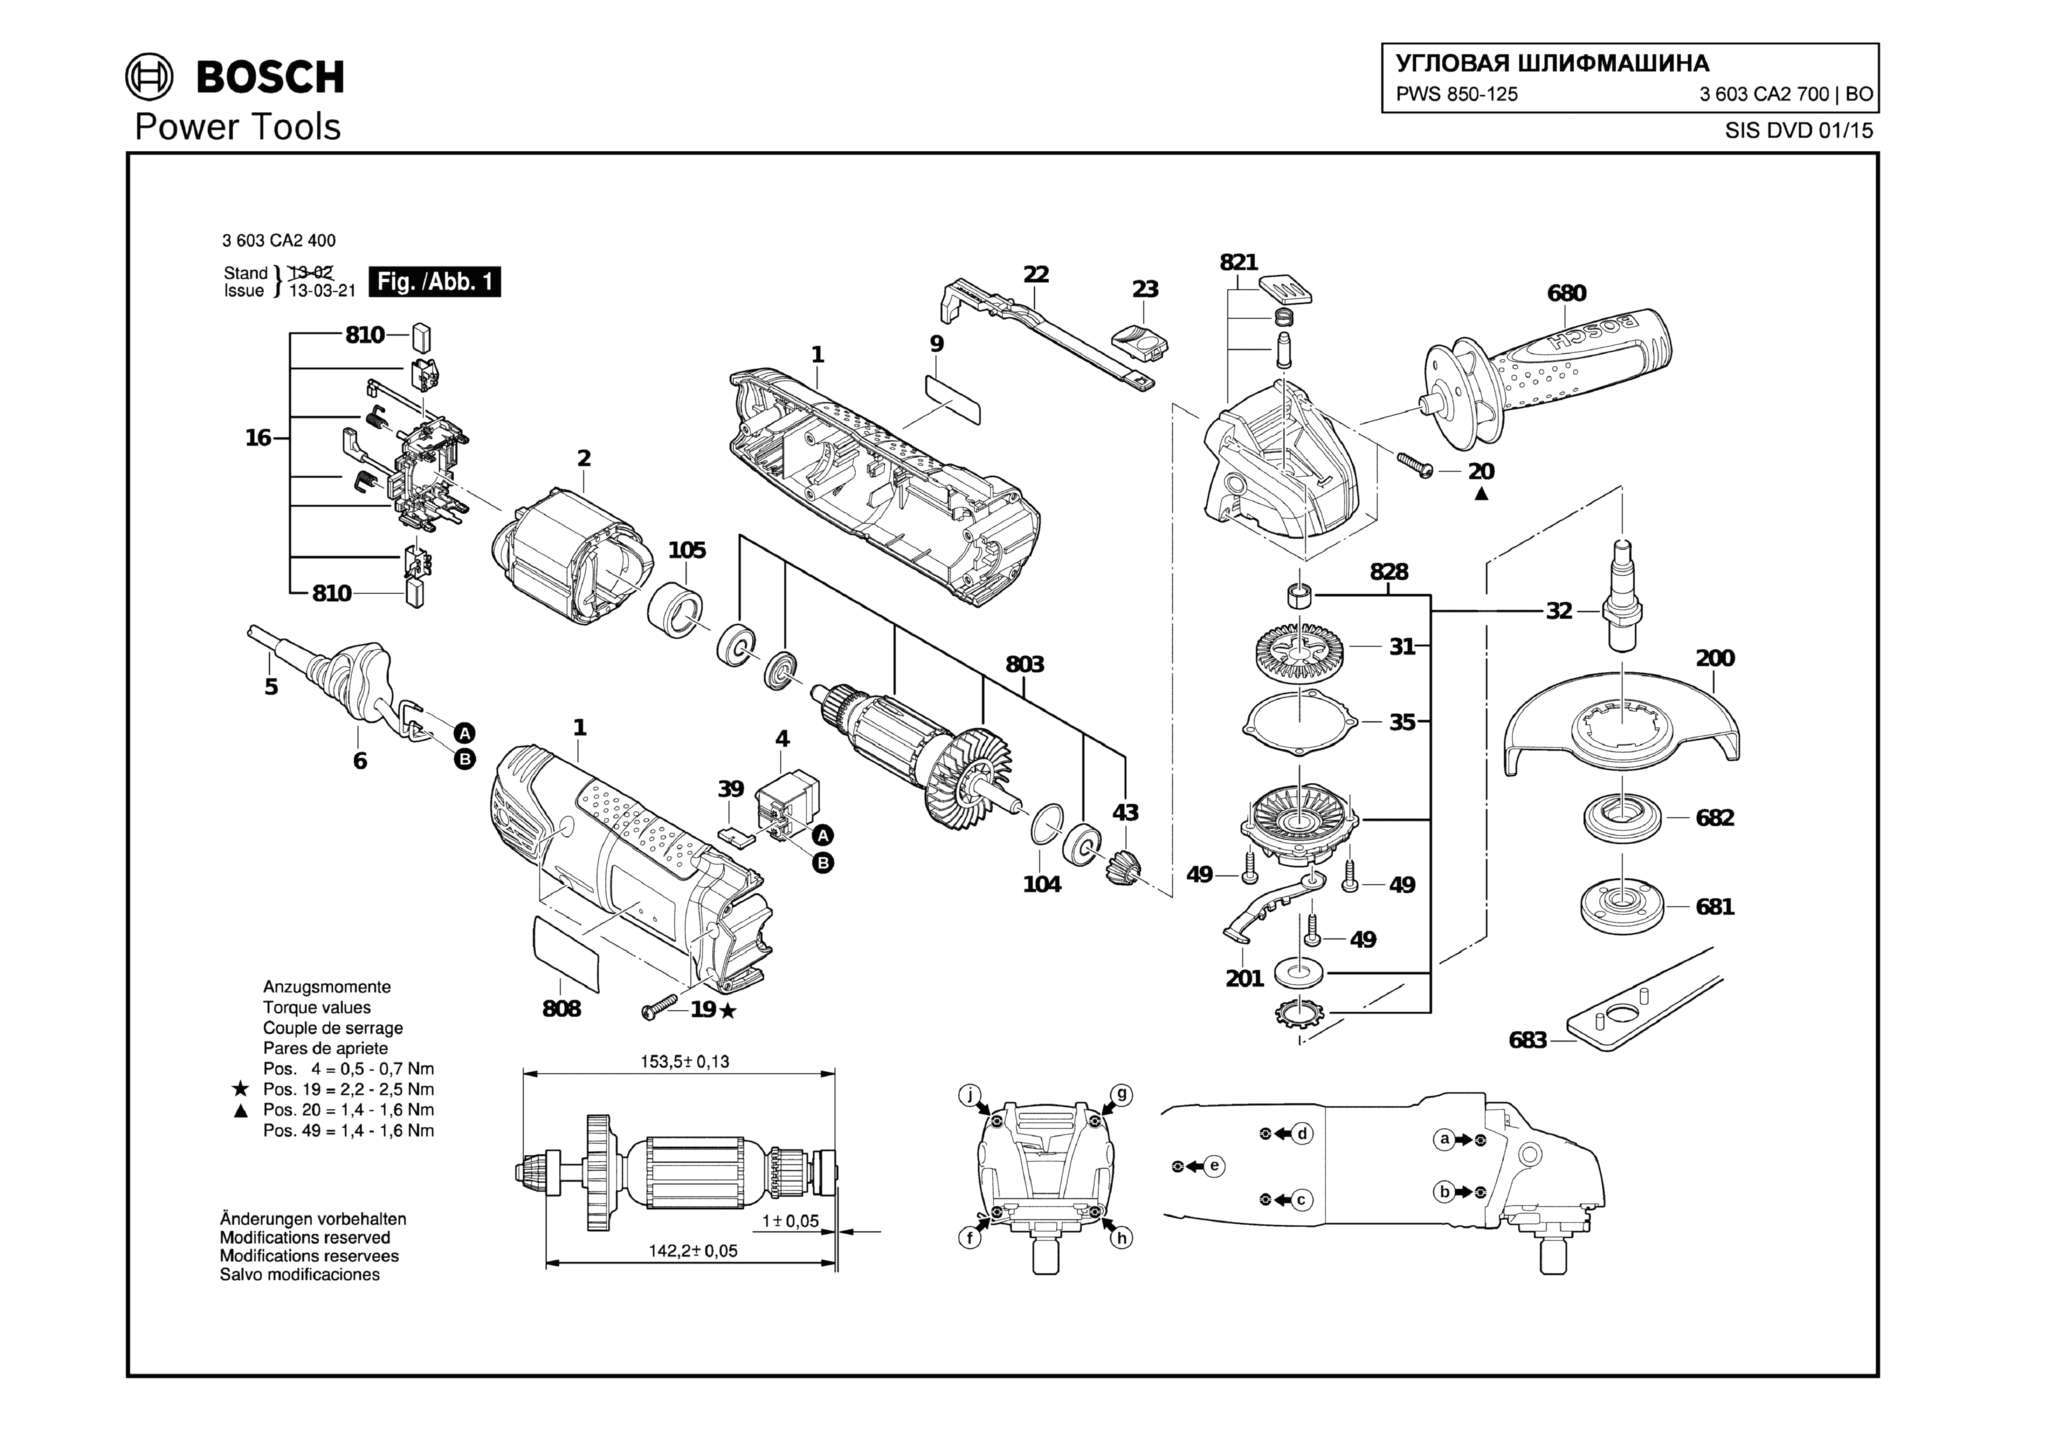 Запчасти, схема и деталировка Bosch PWS 850-125 (ТИП 3603CA2700)